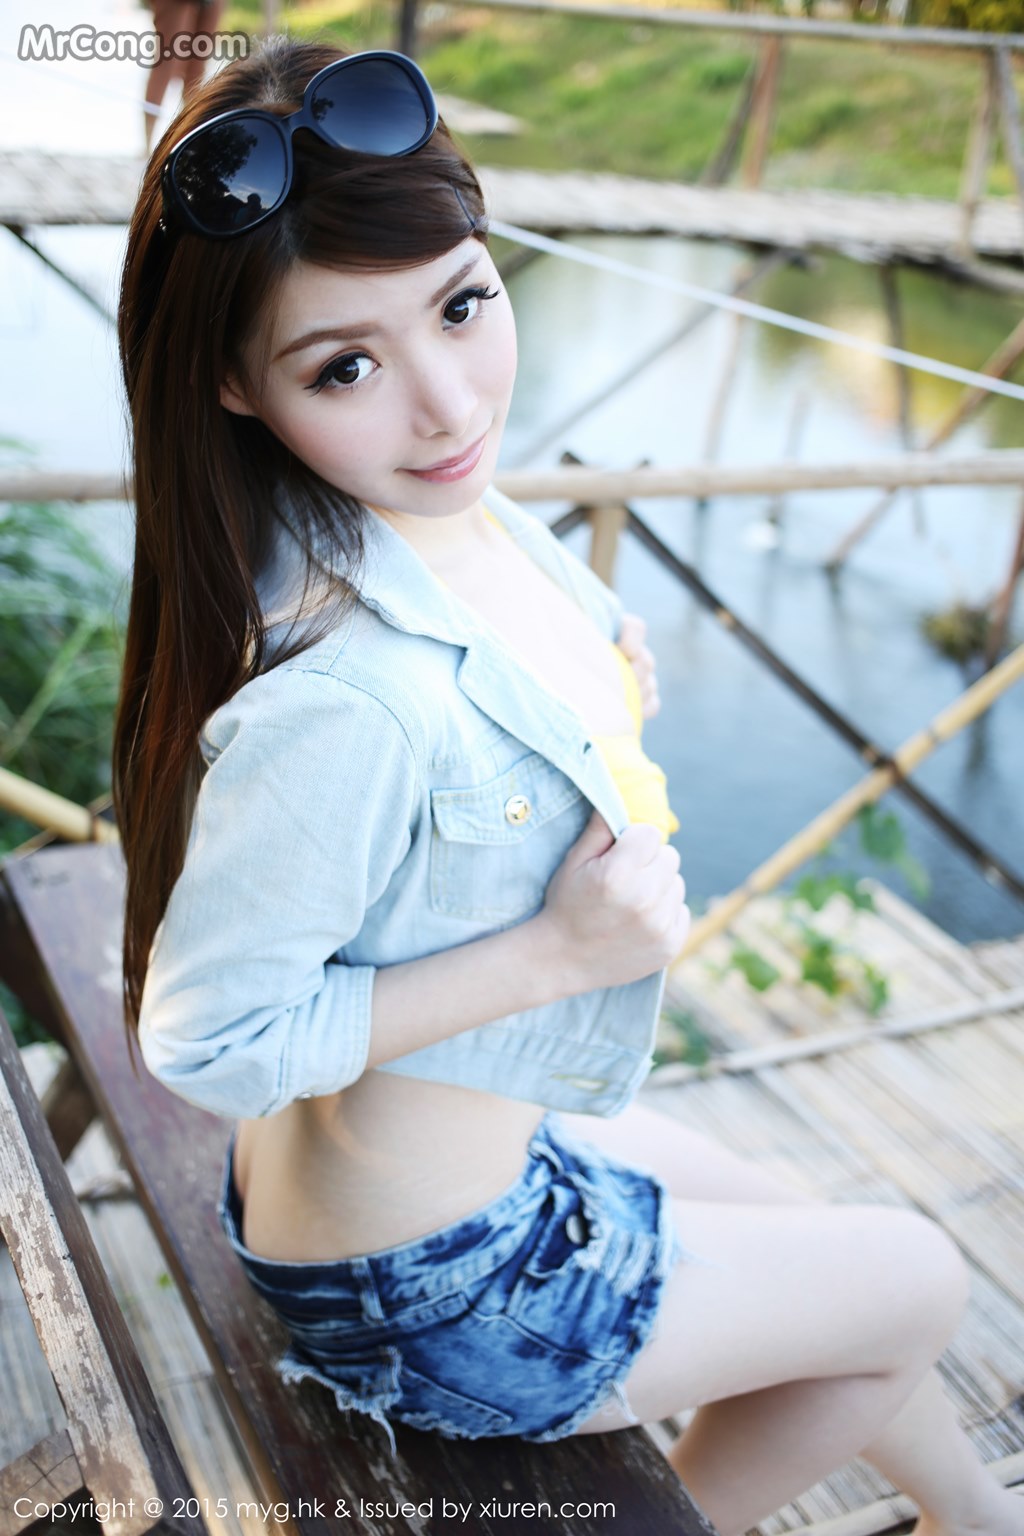 MyGirl Vol.094: Model Mara Jiang (Mara 酱) (57 photos) photo 1-14